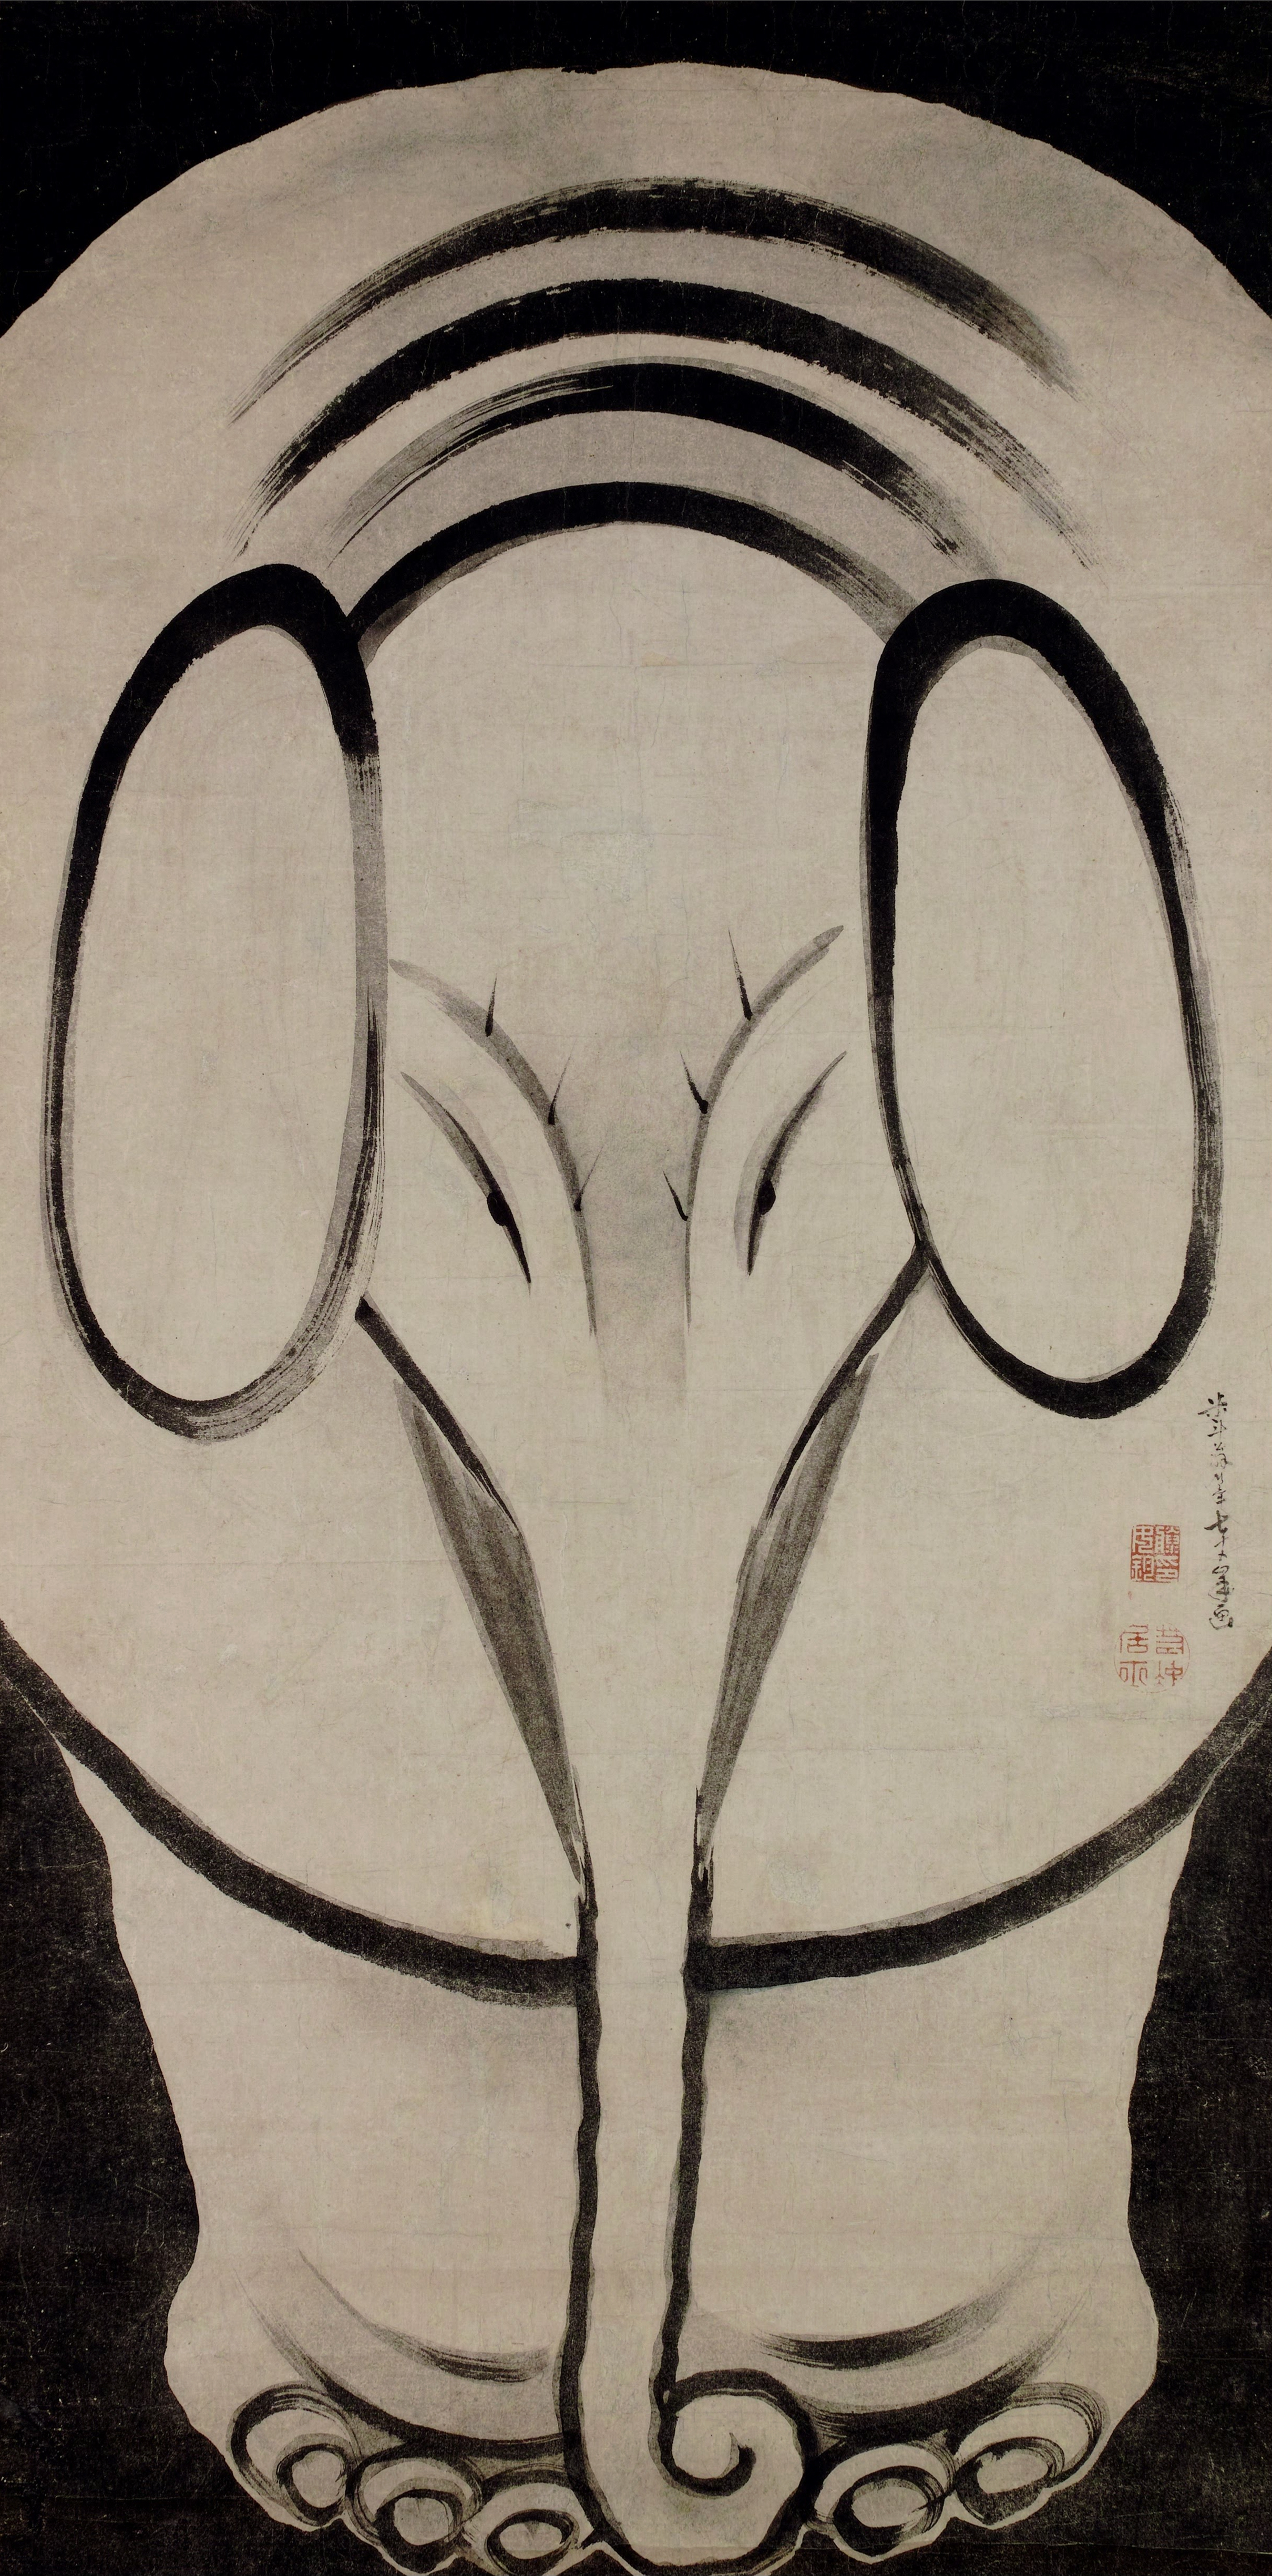 فيل by Itō Jakuchū - 1790 م - ٣ر٧٧ في ٥ر١٥٥ سم 